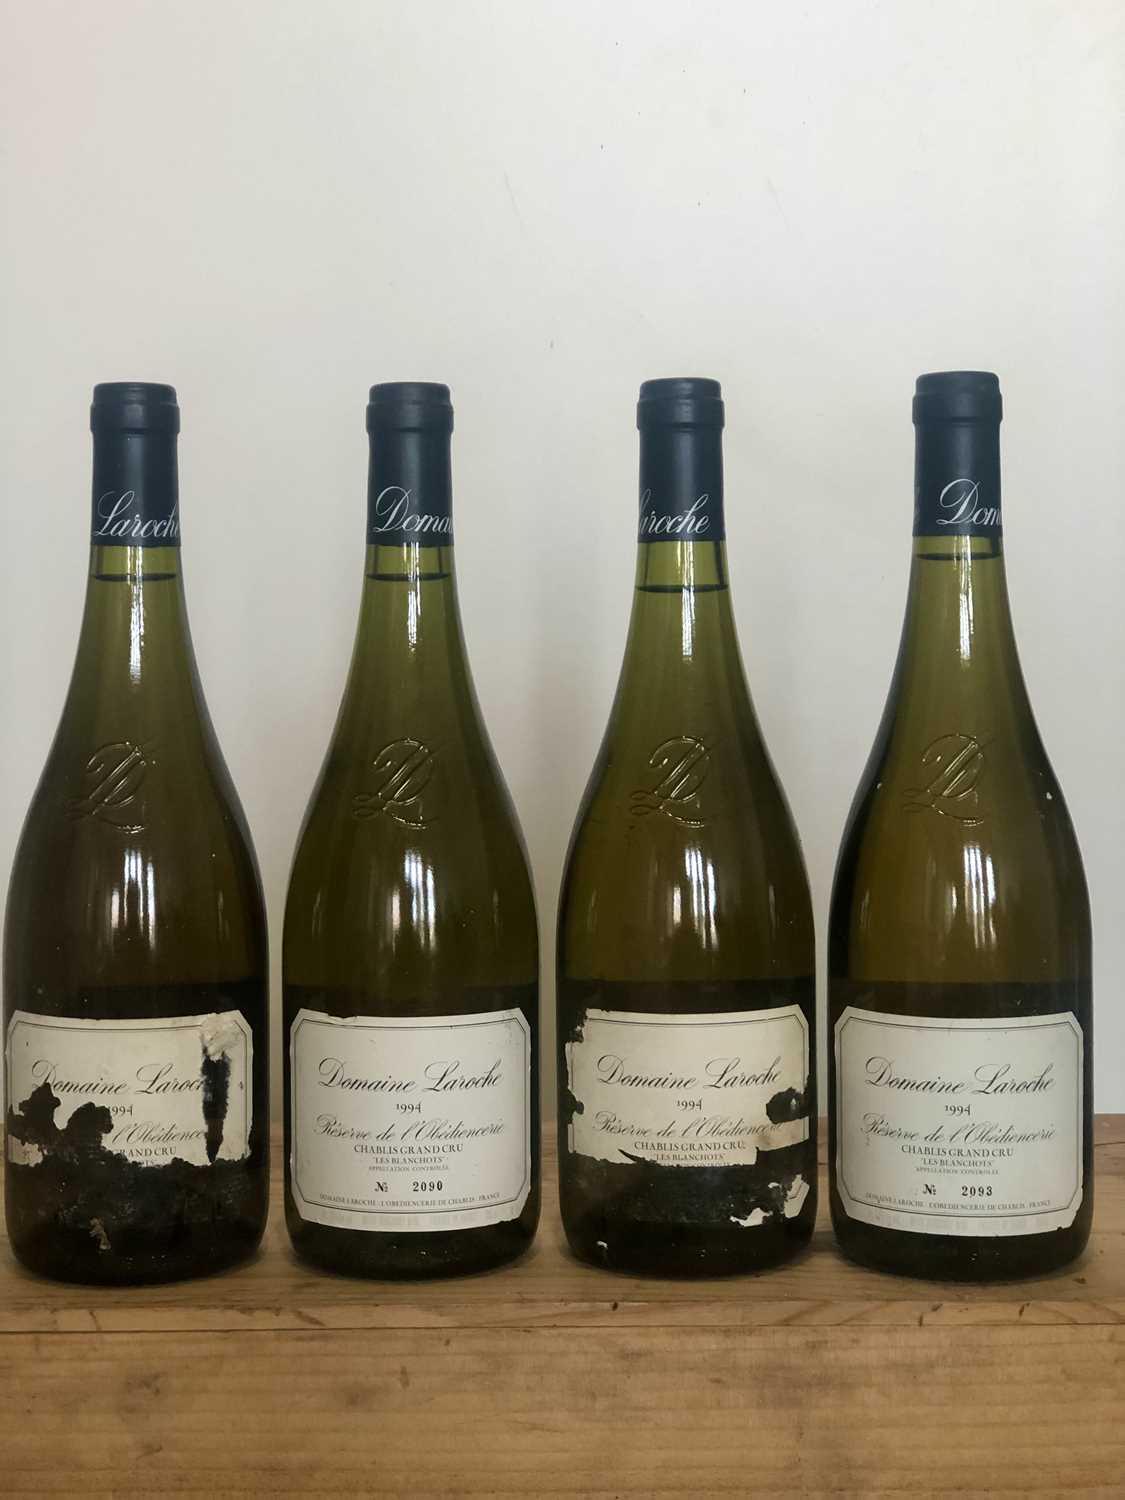 Lot 91 - 4 Bottles Chablis Grand Cru ‘Les Blanchots’ Reserve de l’Obediencerie Domaine Laroche 1994